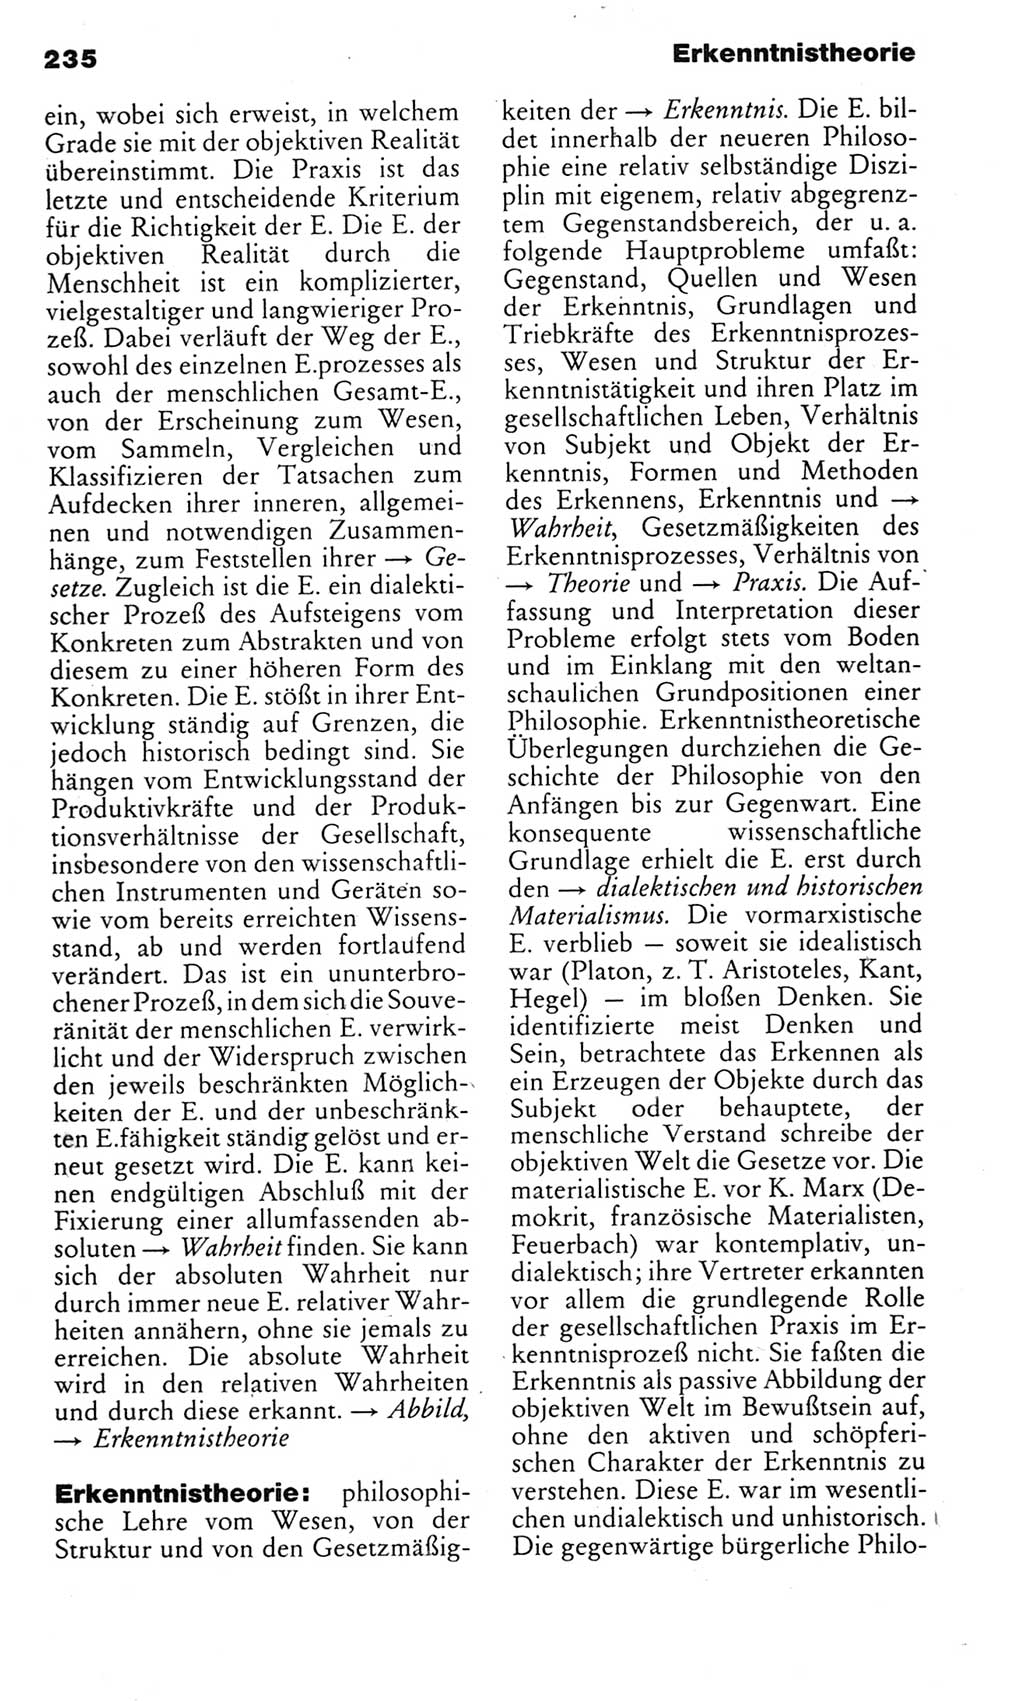 Kleines politisches Wörterbuch [Deutsche Demokratische Republik (DDR)] 1983, Seite 235 (Kl. pol. Wb. DDR 1983, S. 235)